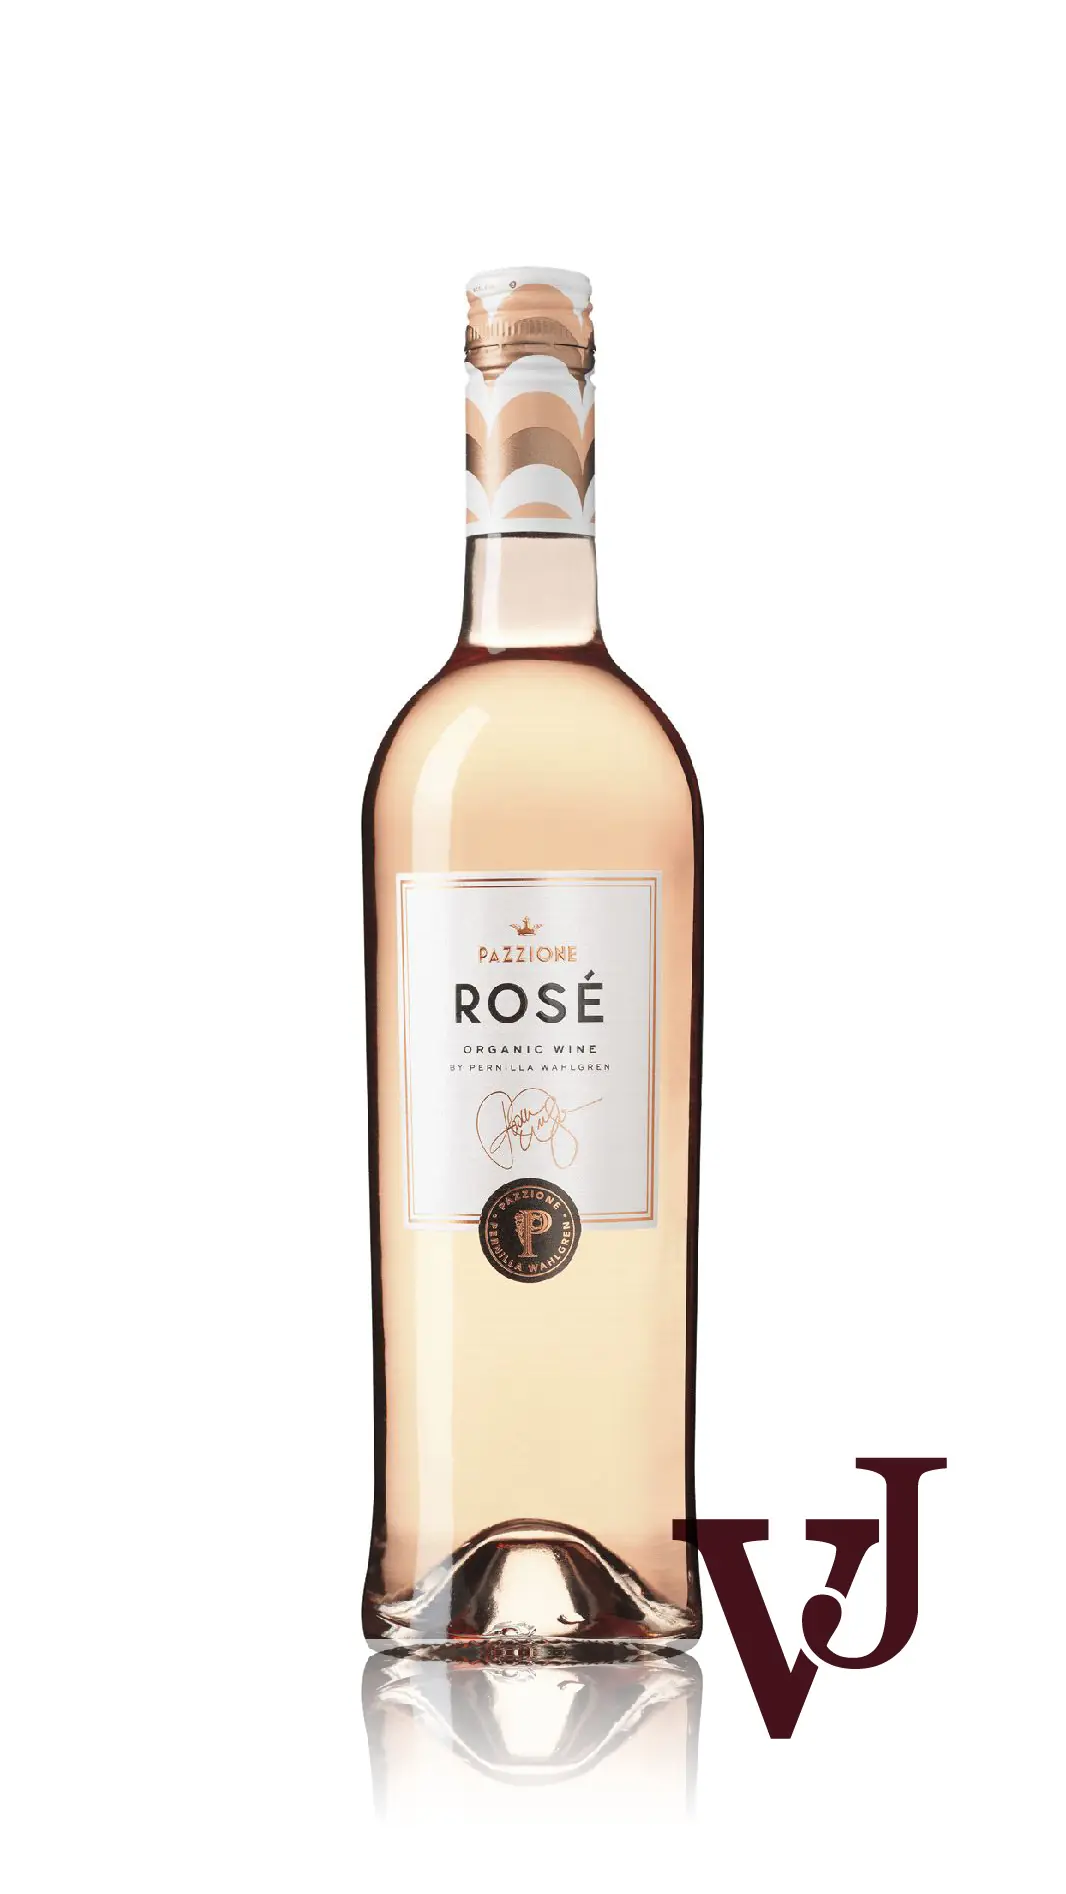 Rosé Vin - Pazzione Rosé by Pernilla Wahlgren artikel nummer 8658201 från producenten Vinimundi från området Spanien - Vinjournalen.se